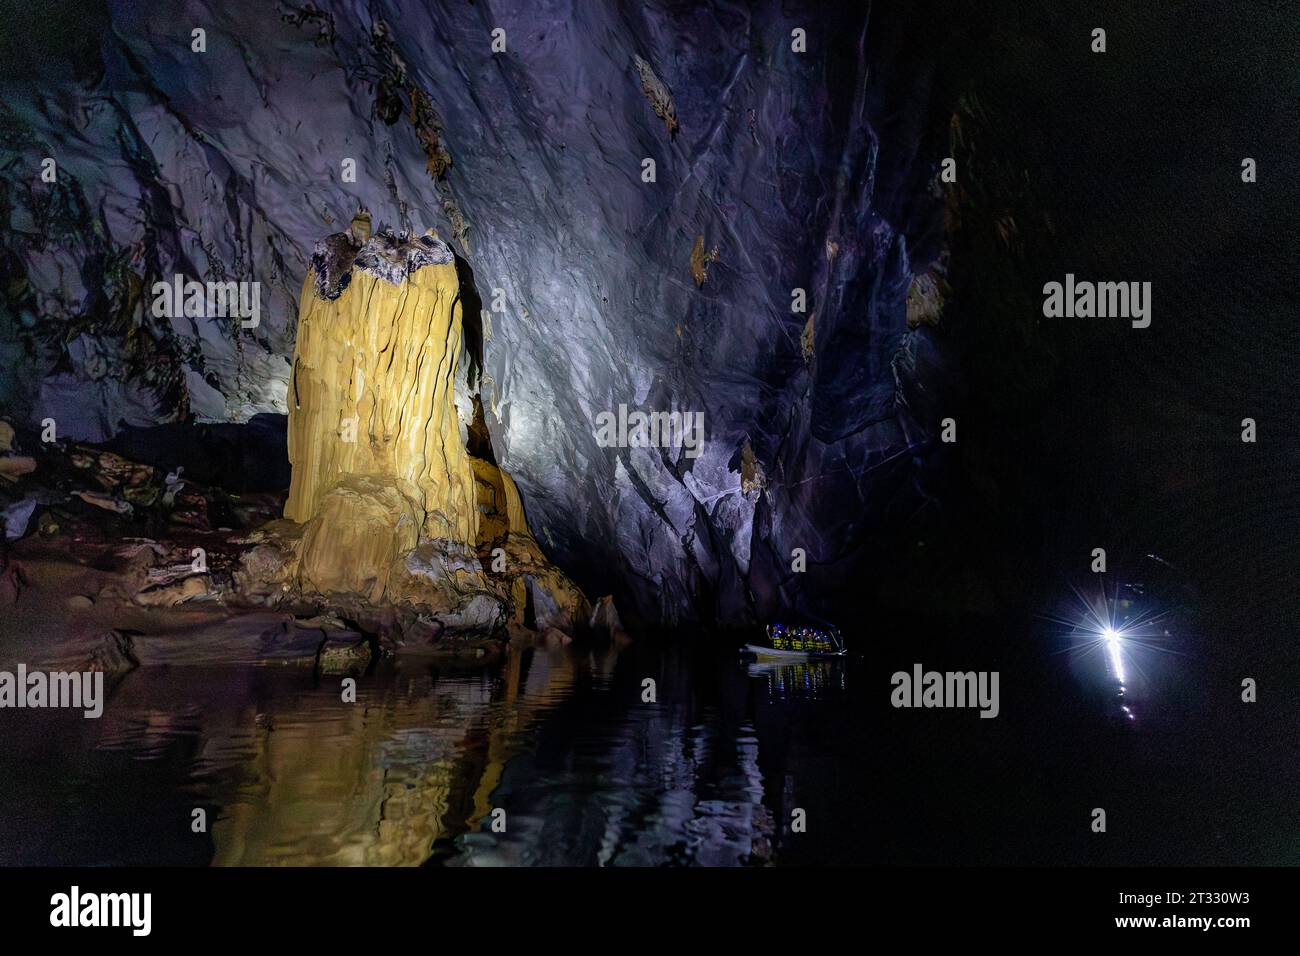 Les touristes explorent les grottes souterraines sombres de la rivière en bateau et observent les formations rocheuses en utilisant des lampes frontales Banque D'Images